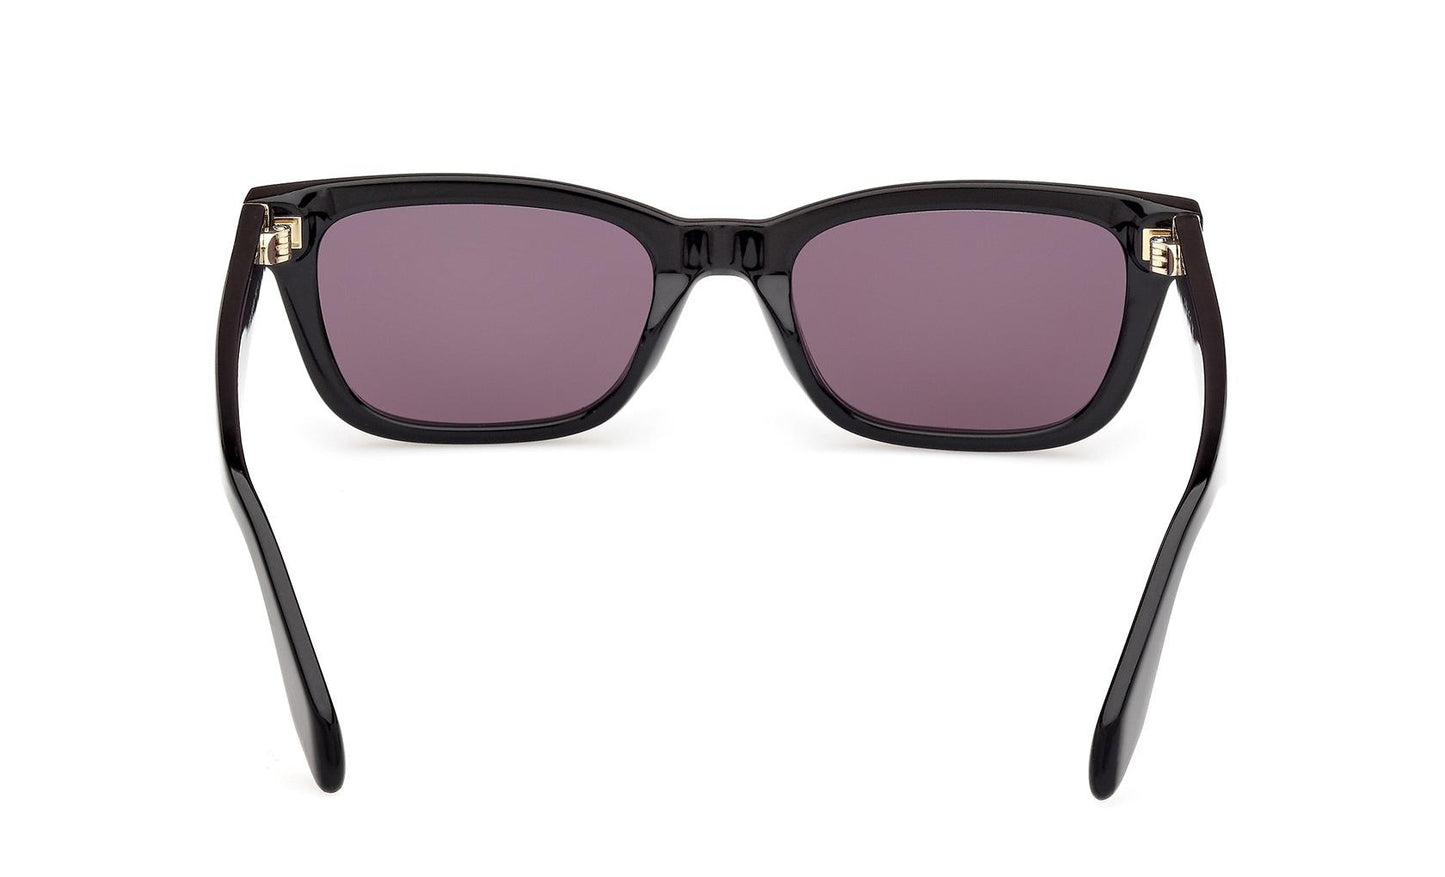 Adidas Originals Sunglasses OR0117 01A